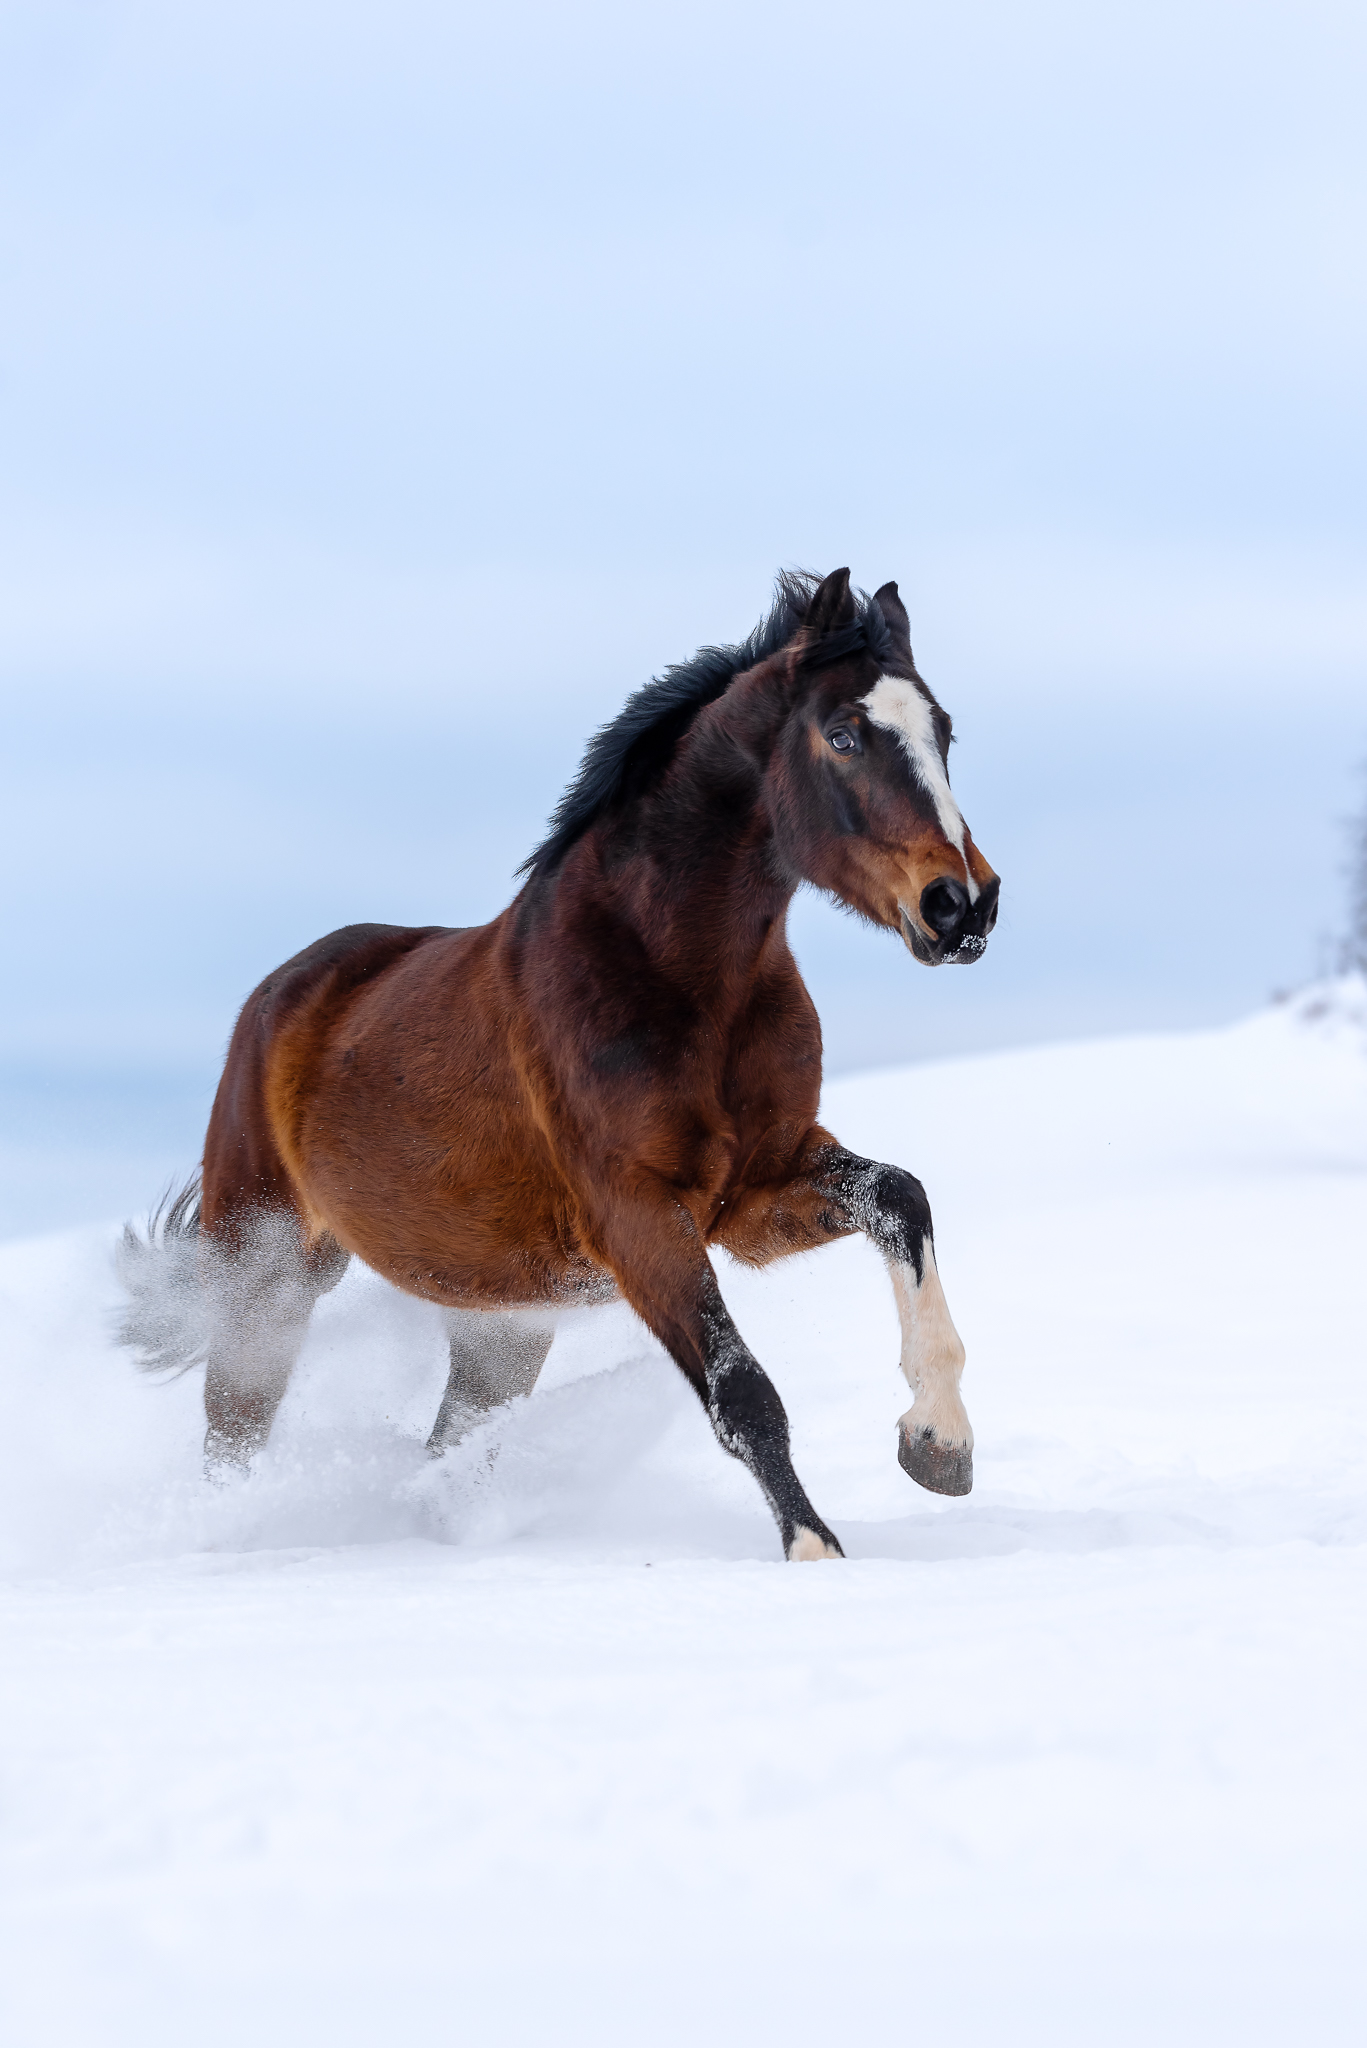 Pferd galloppierend im Schnee bunte aufnahme